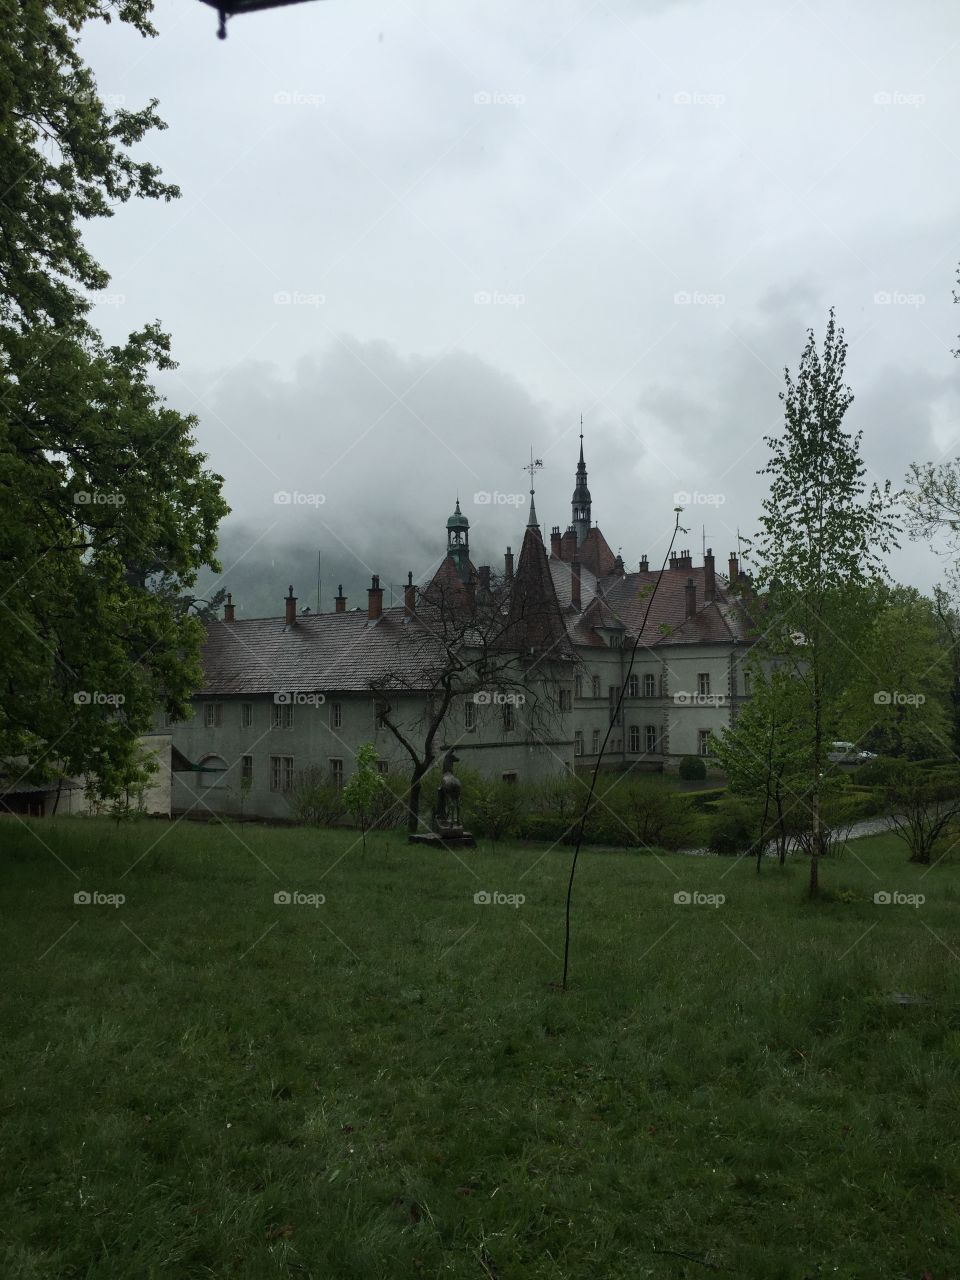 Schönborn castle after rain